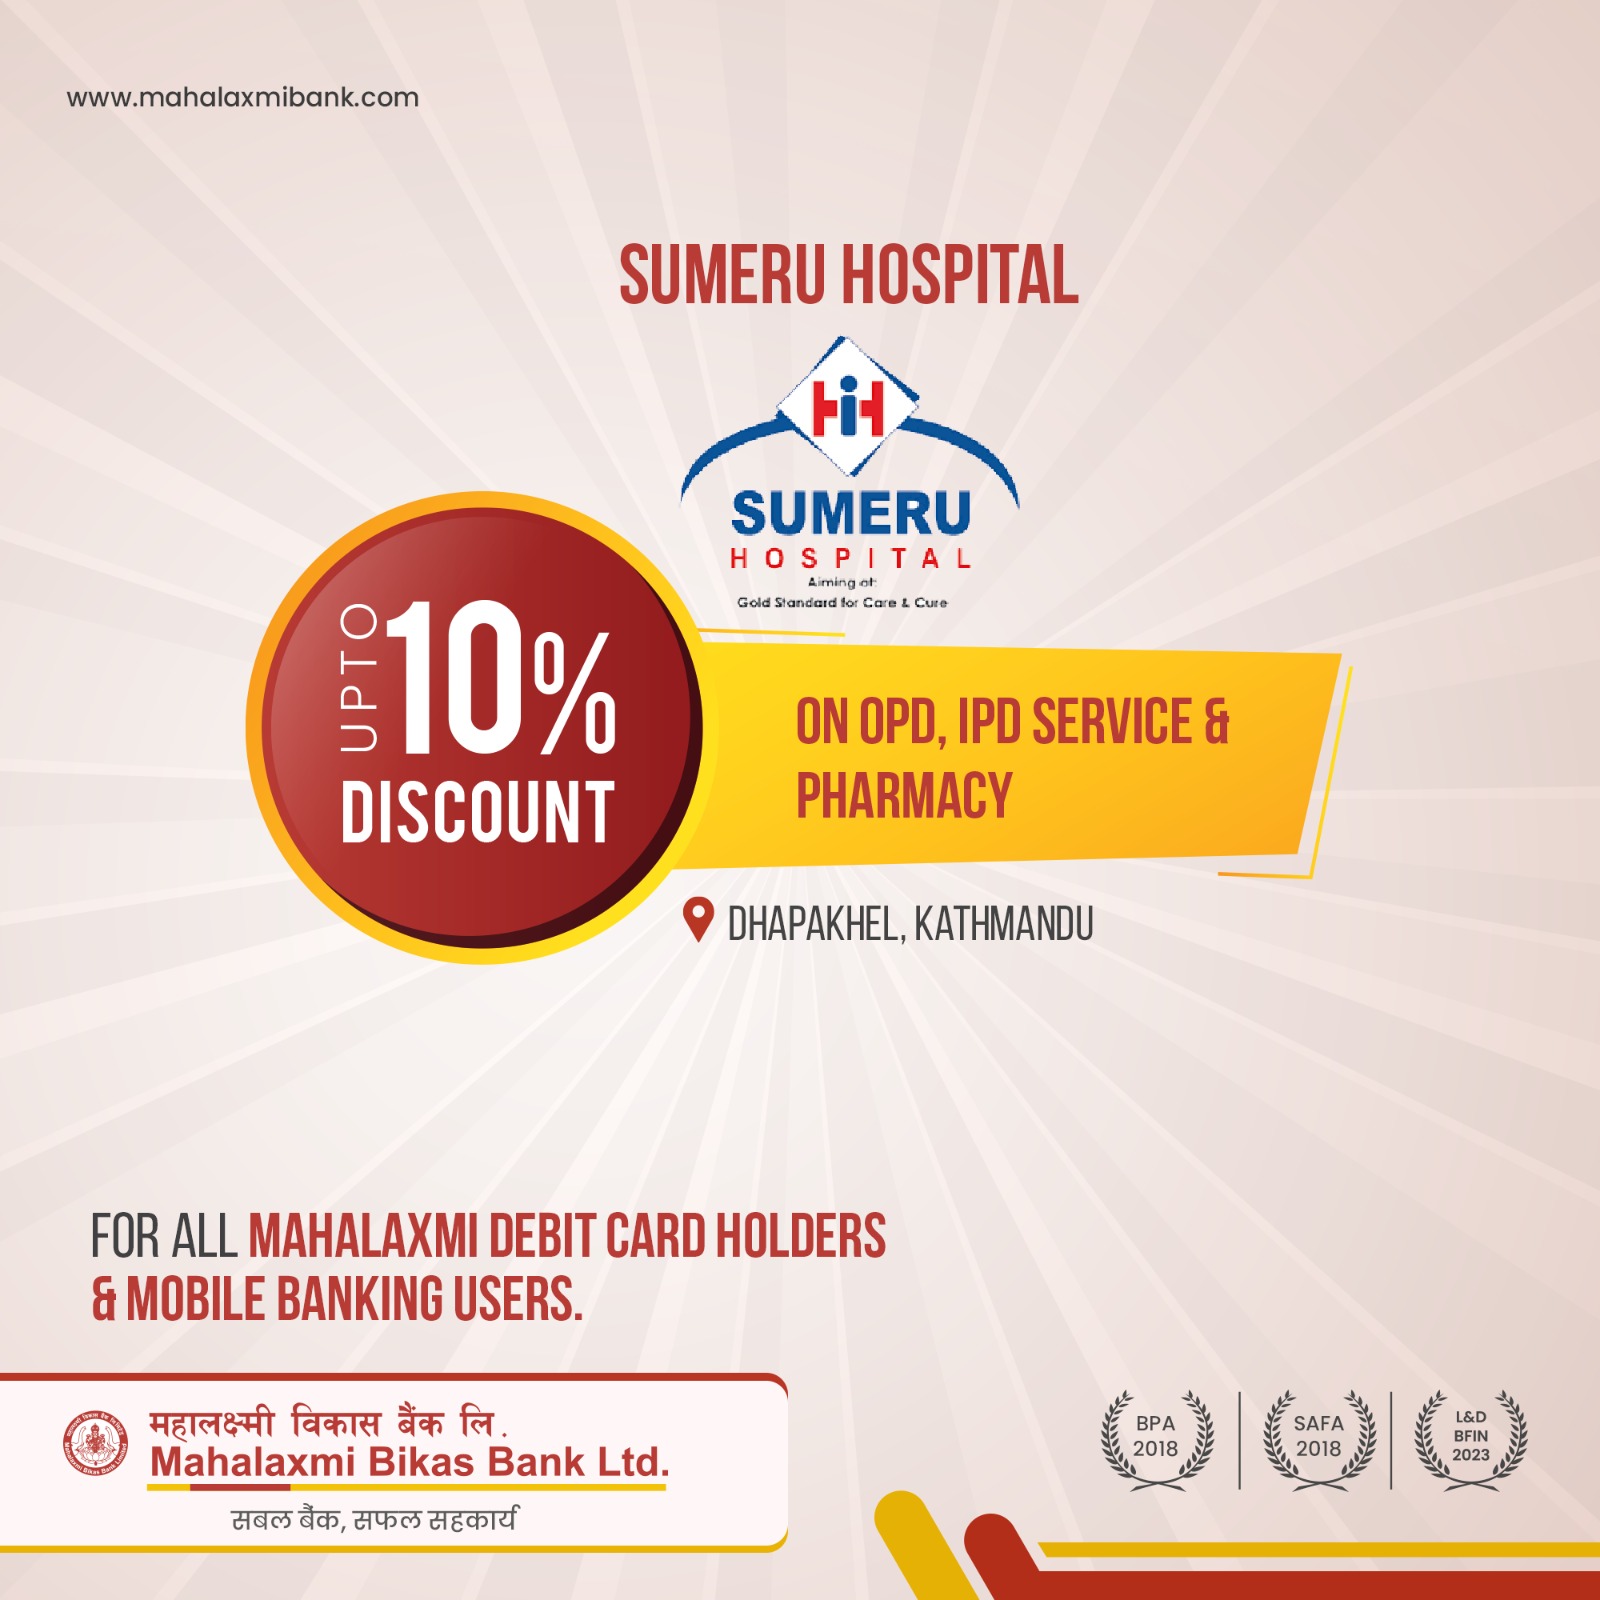 Sumeru Hospital